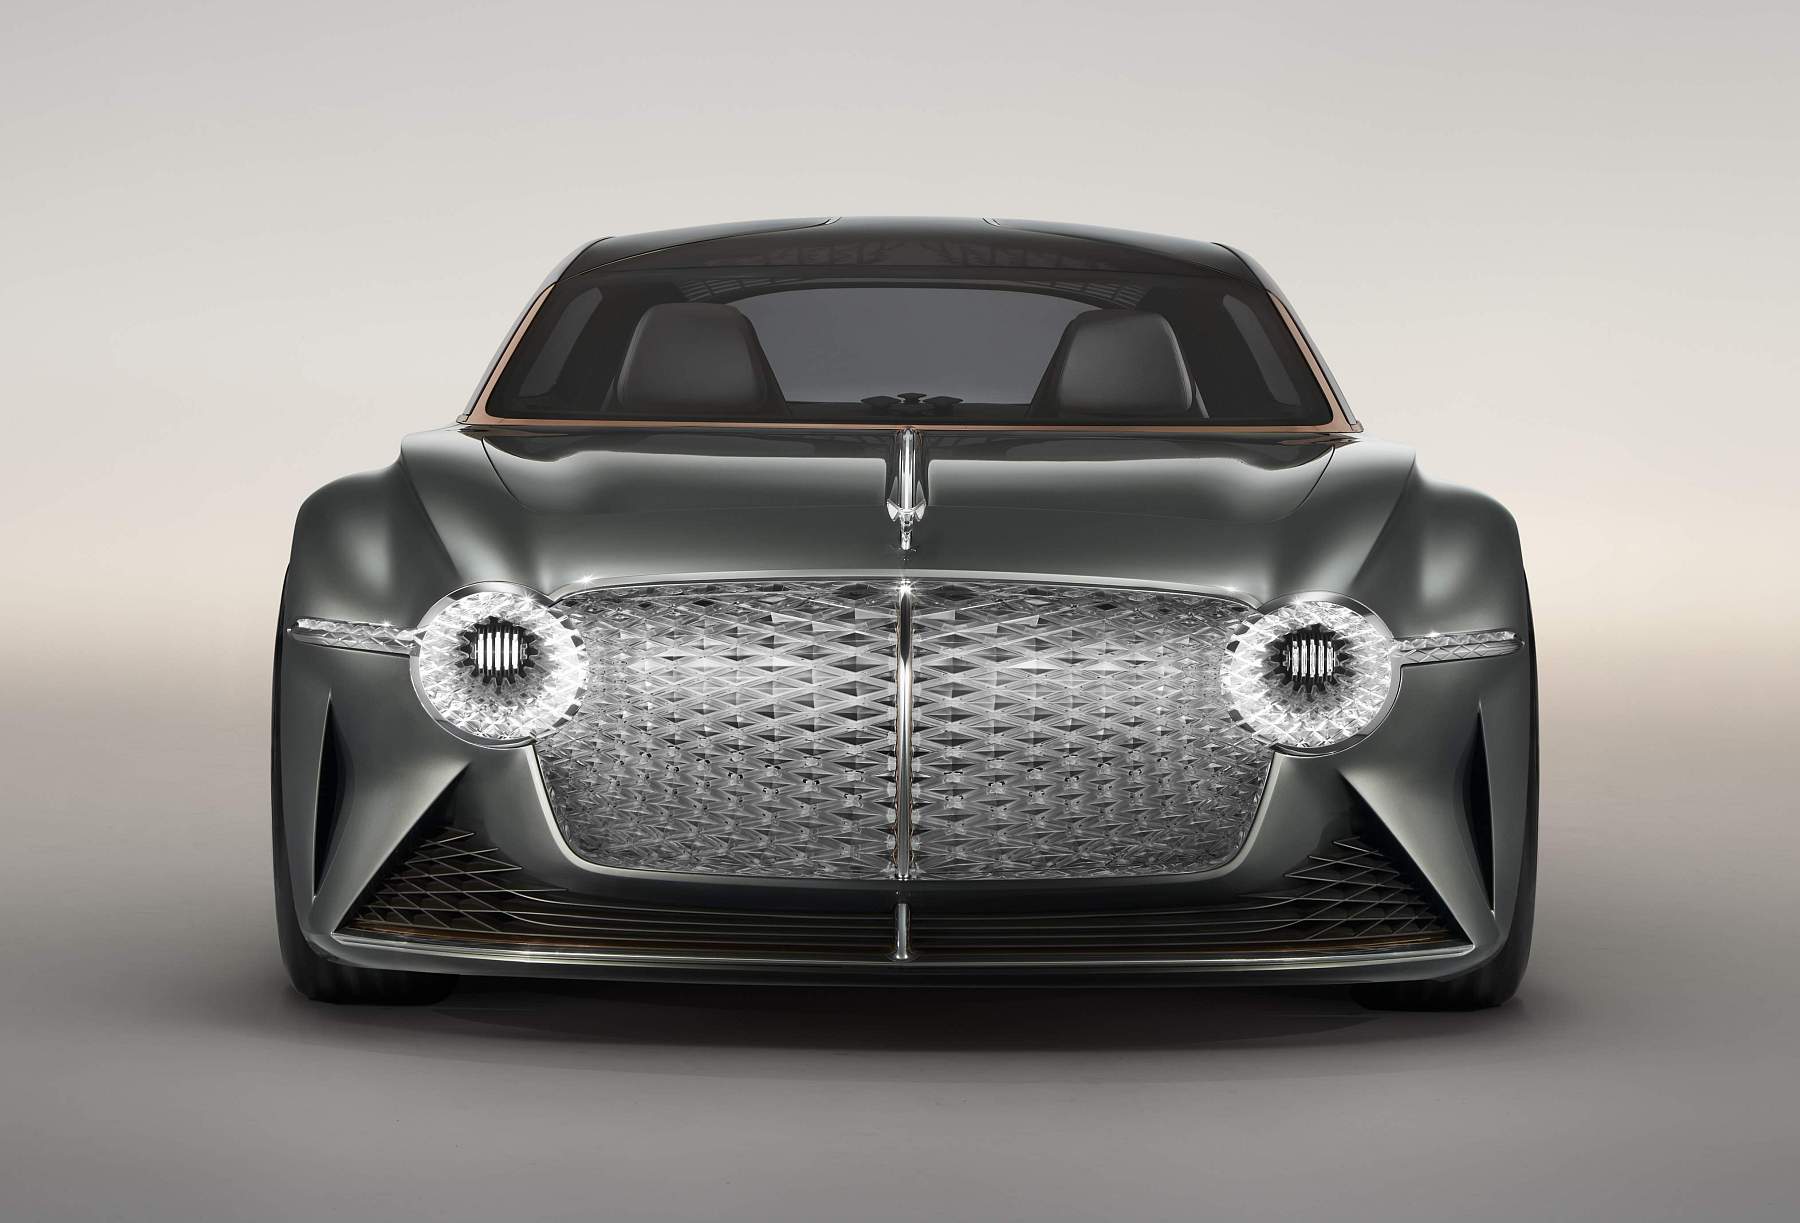 Bentley EXP 100 GT (5)